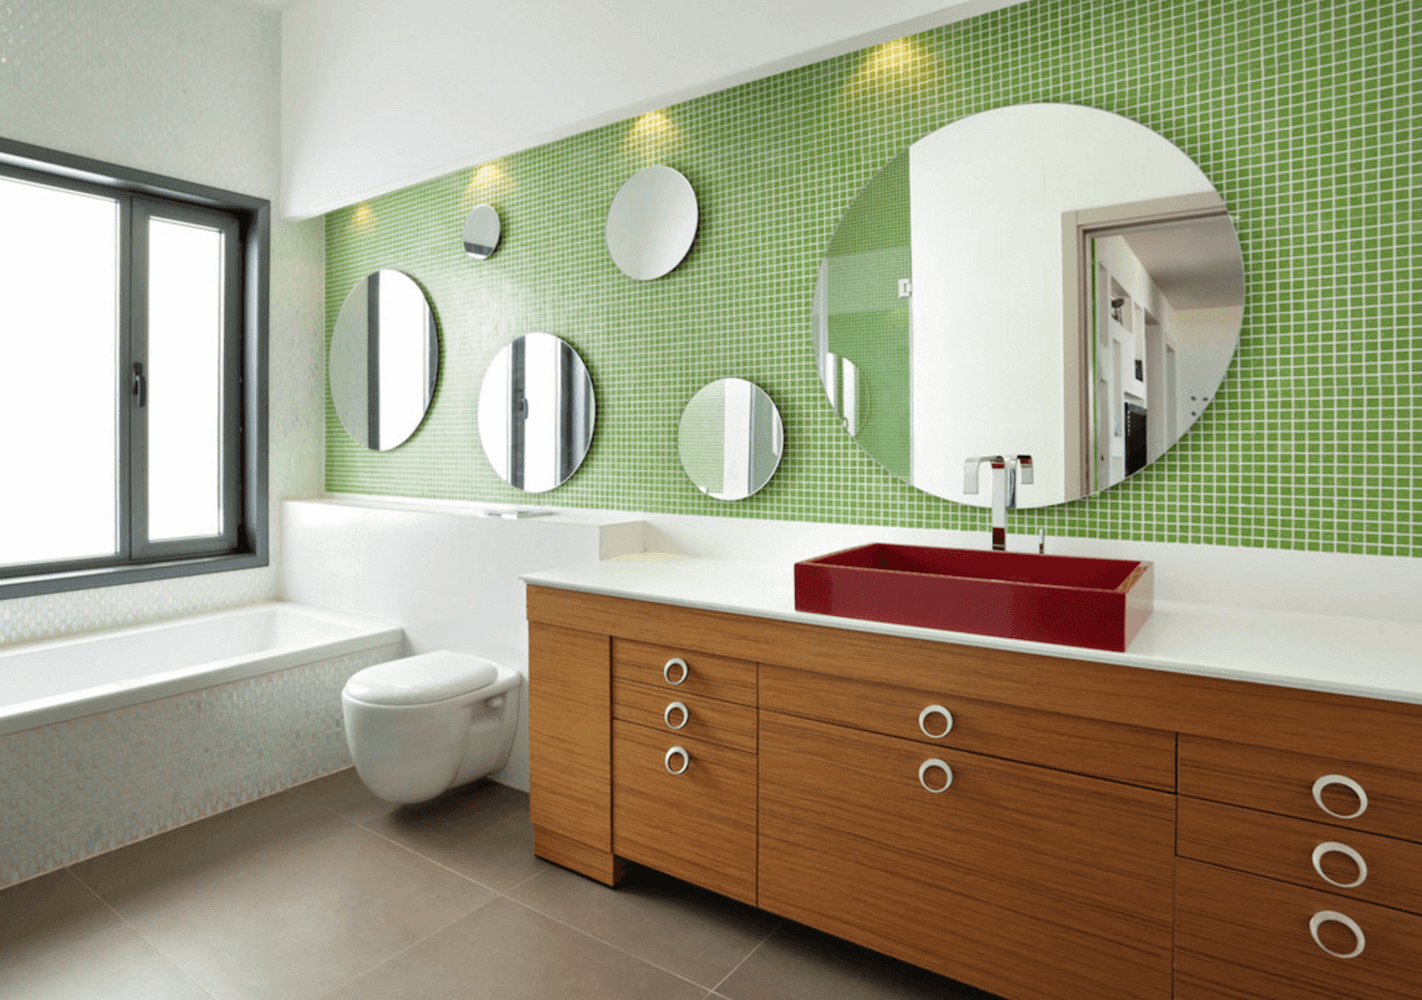 Круглые зеркала разной величины в интерьере ванной комнаты